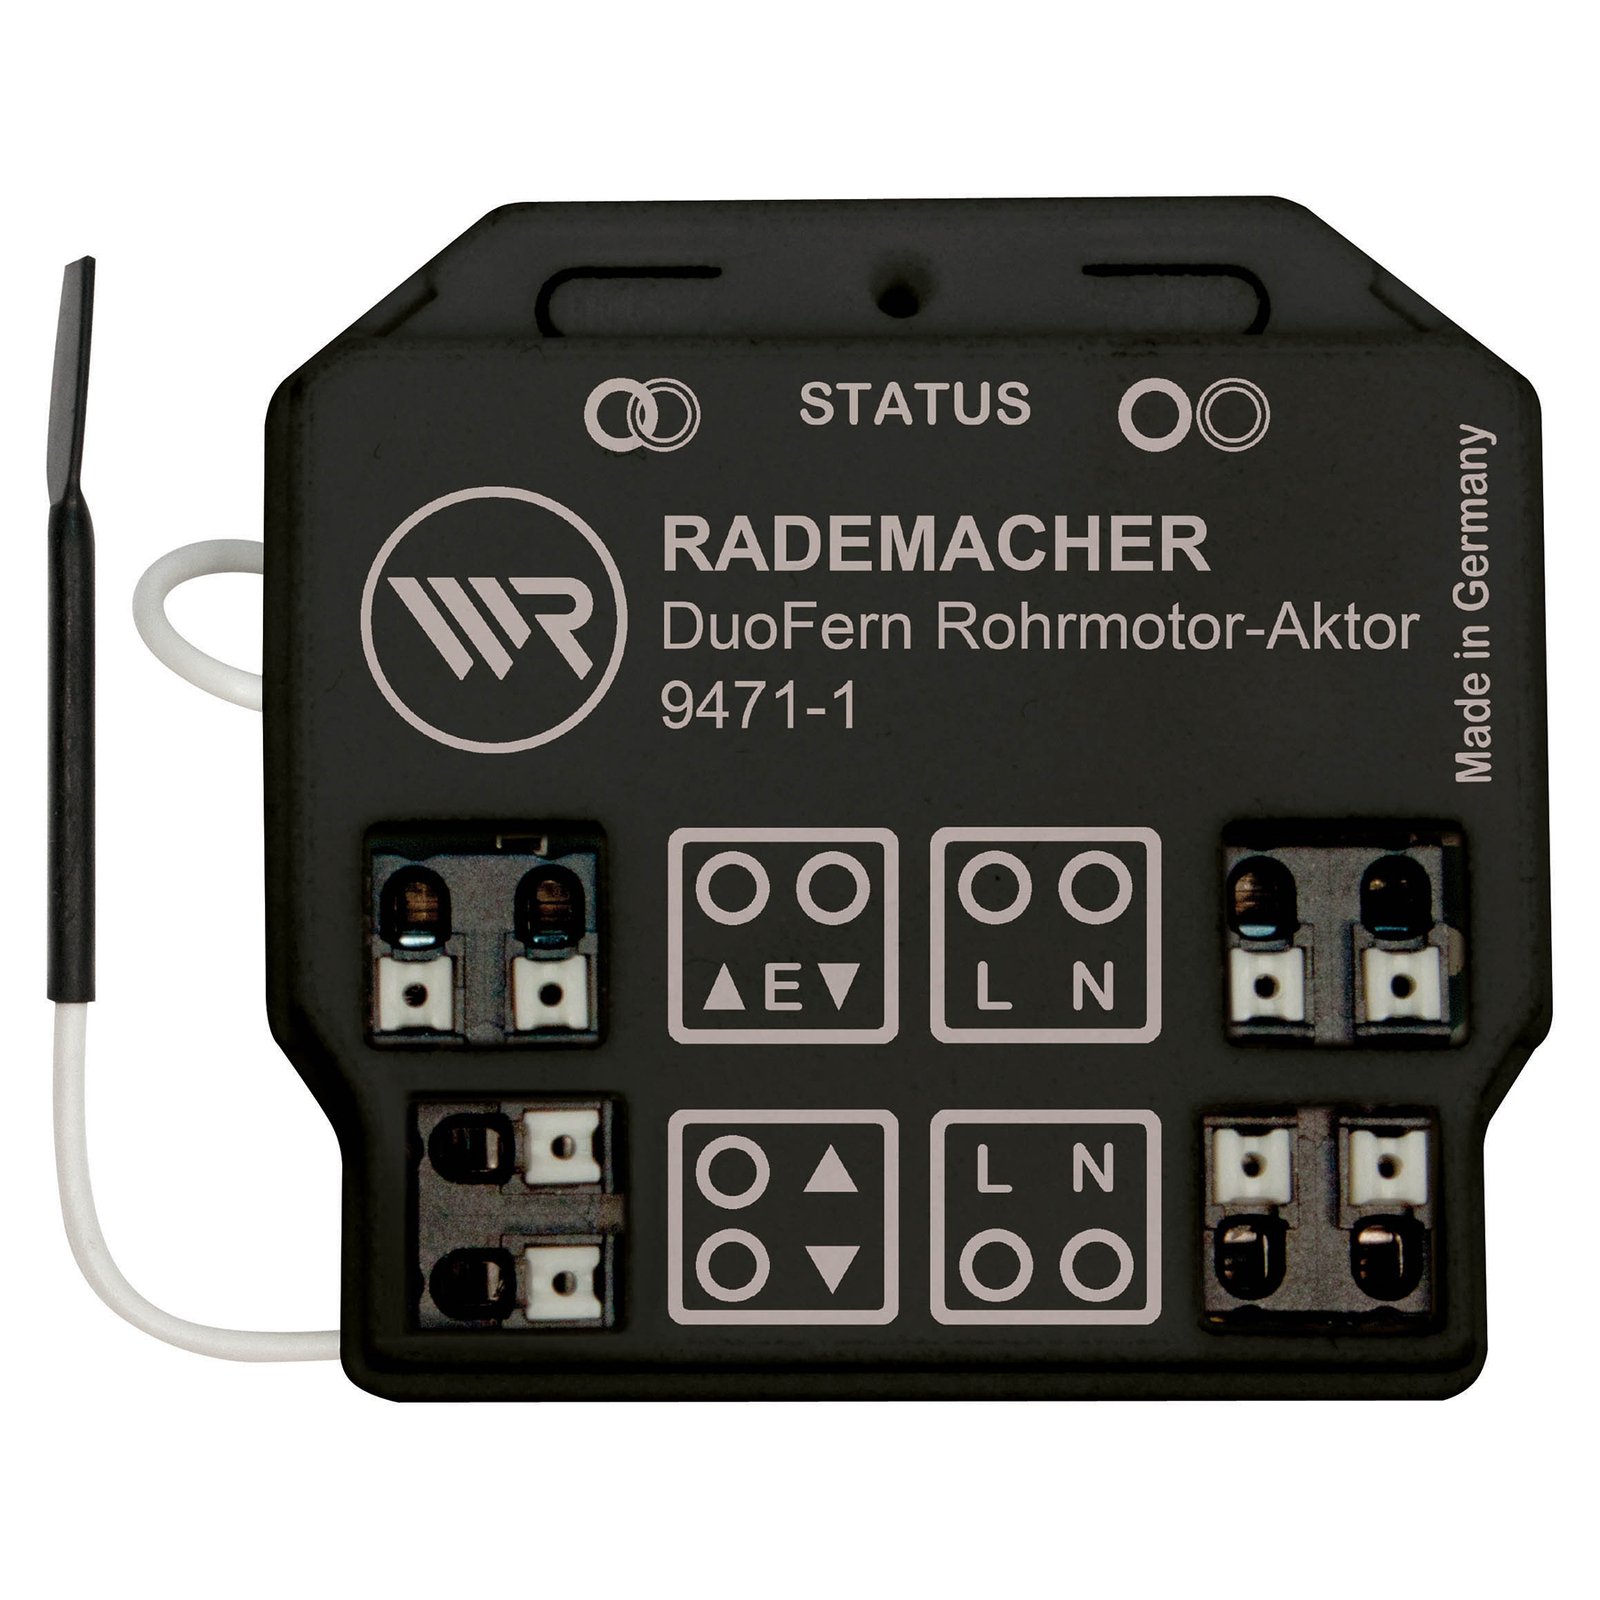 أتيشو لا يحصى السابق  Rademacher DuoFern Rohrmotor Aktor, 230 V